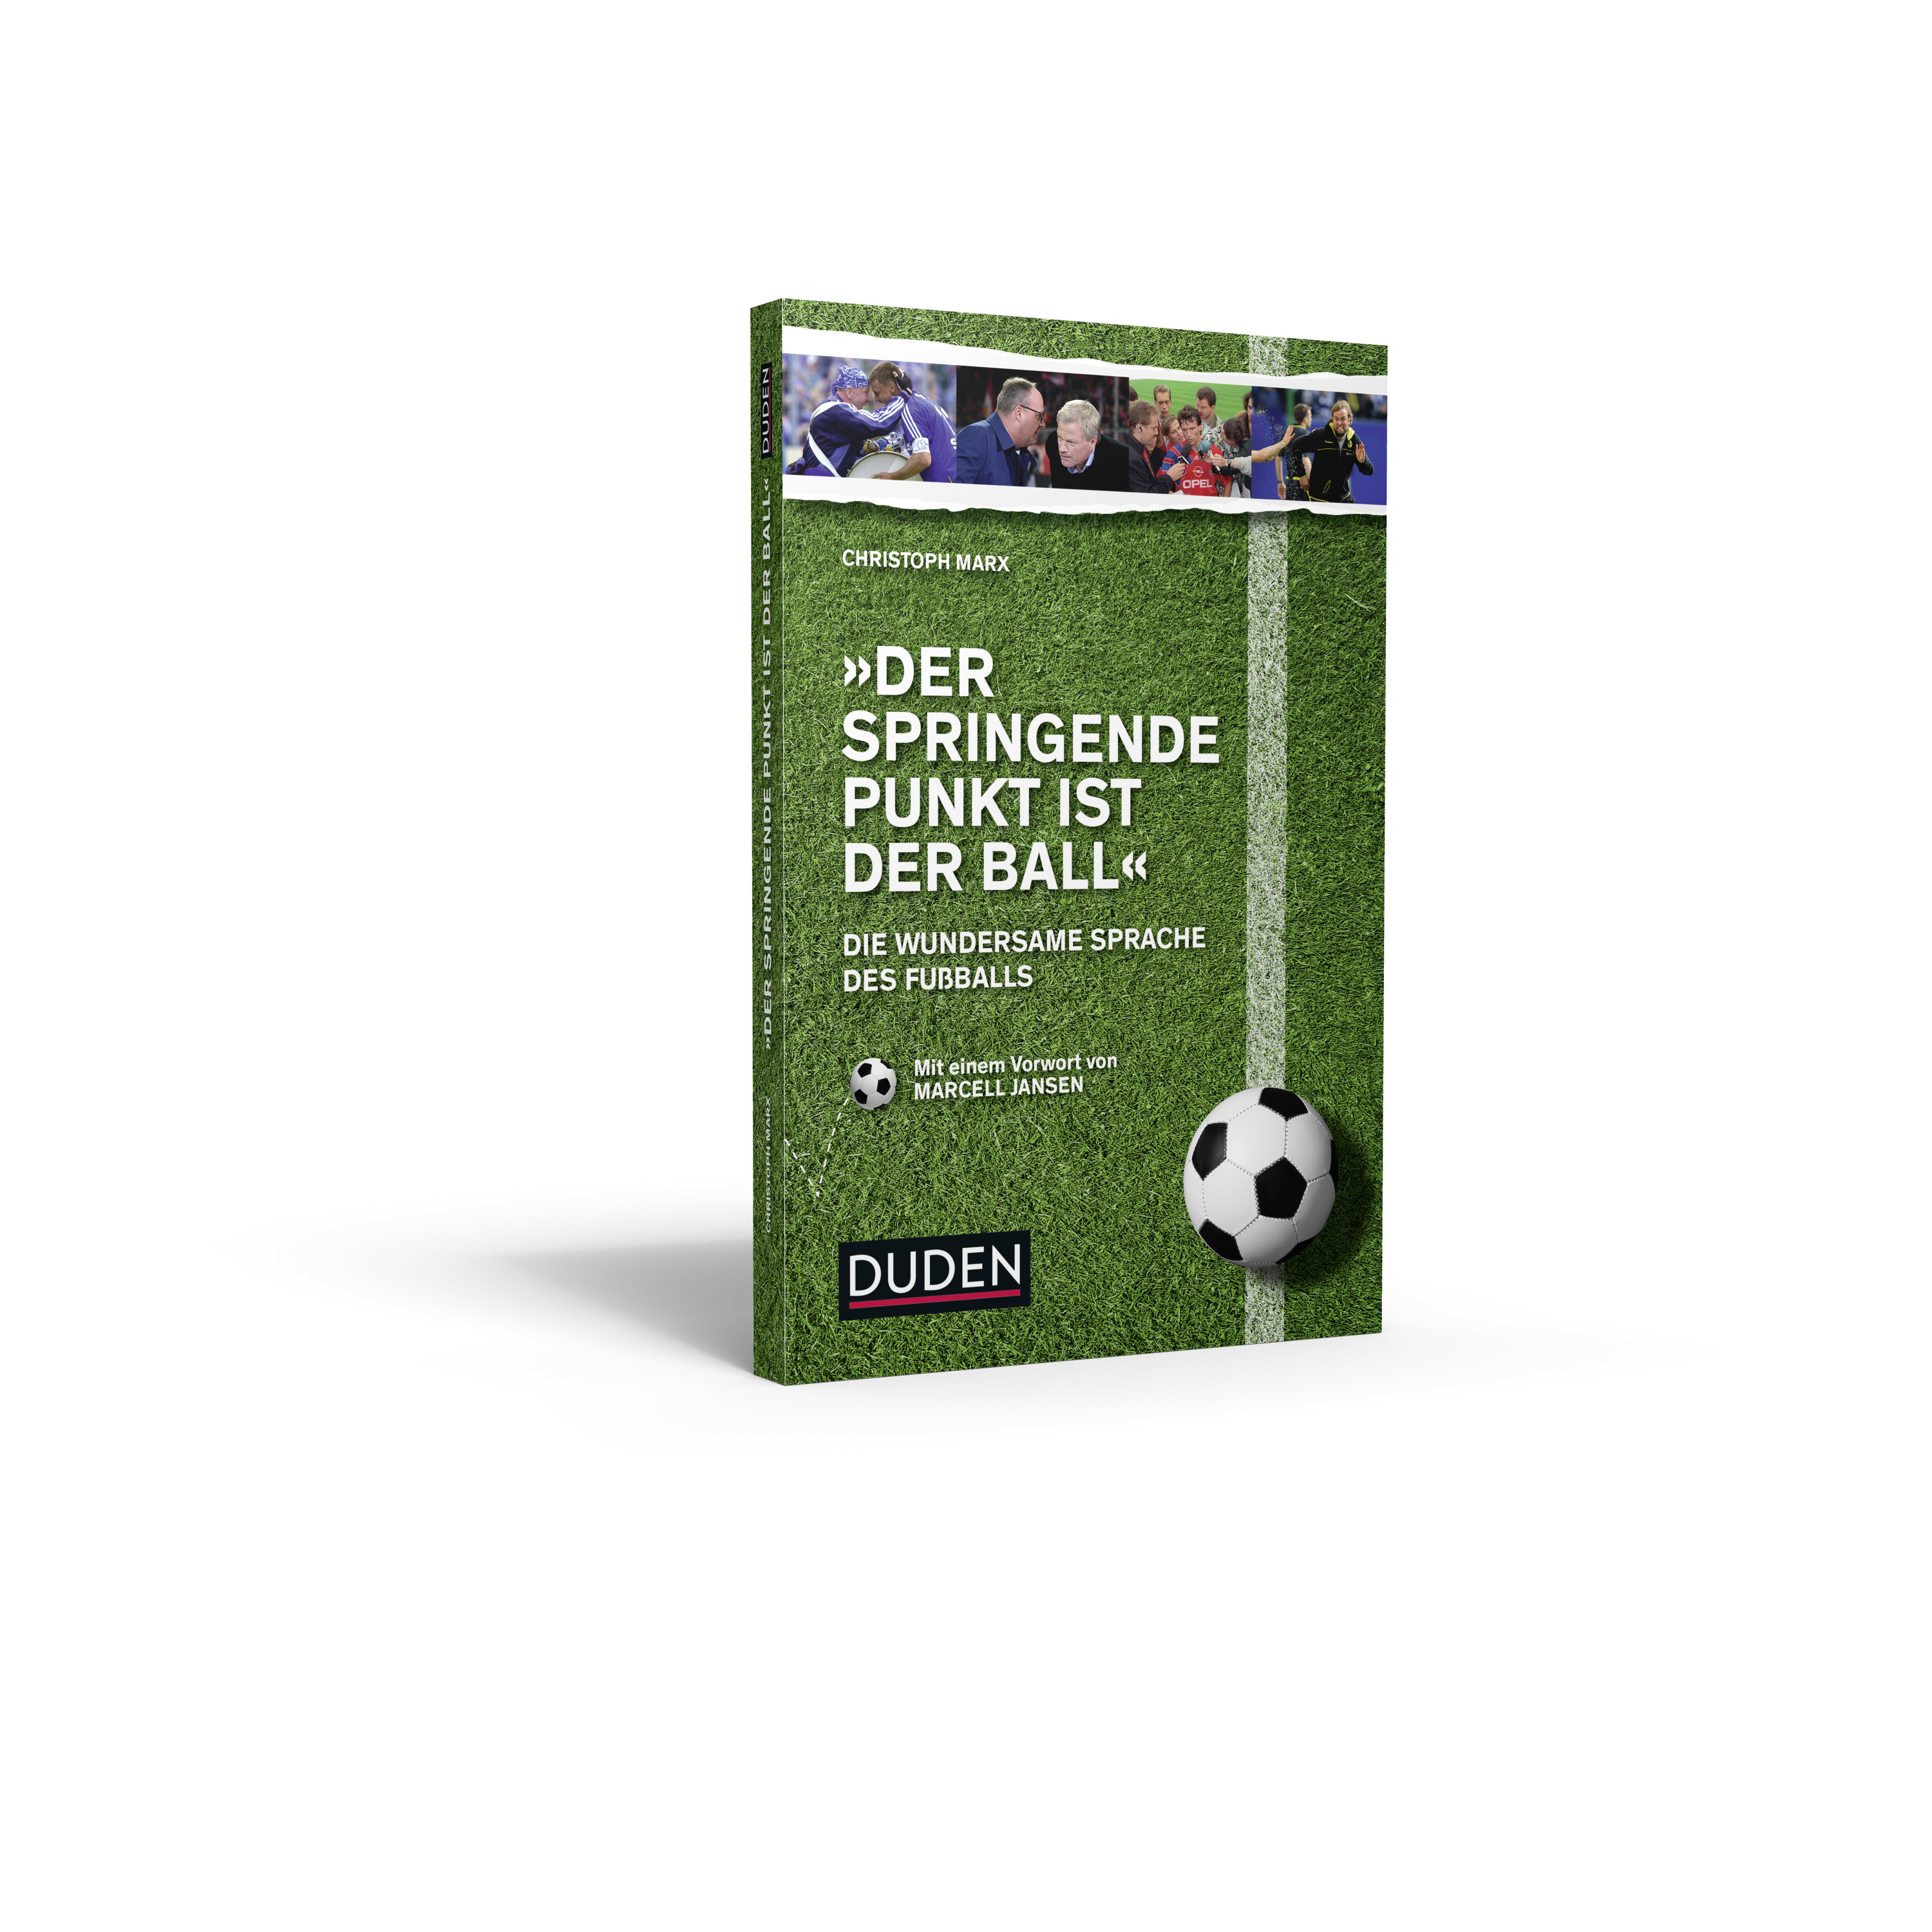 Dies ist das Cover von dem Duden-Buch zur Fußballsprache von CHristoph Marx